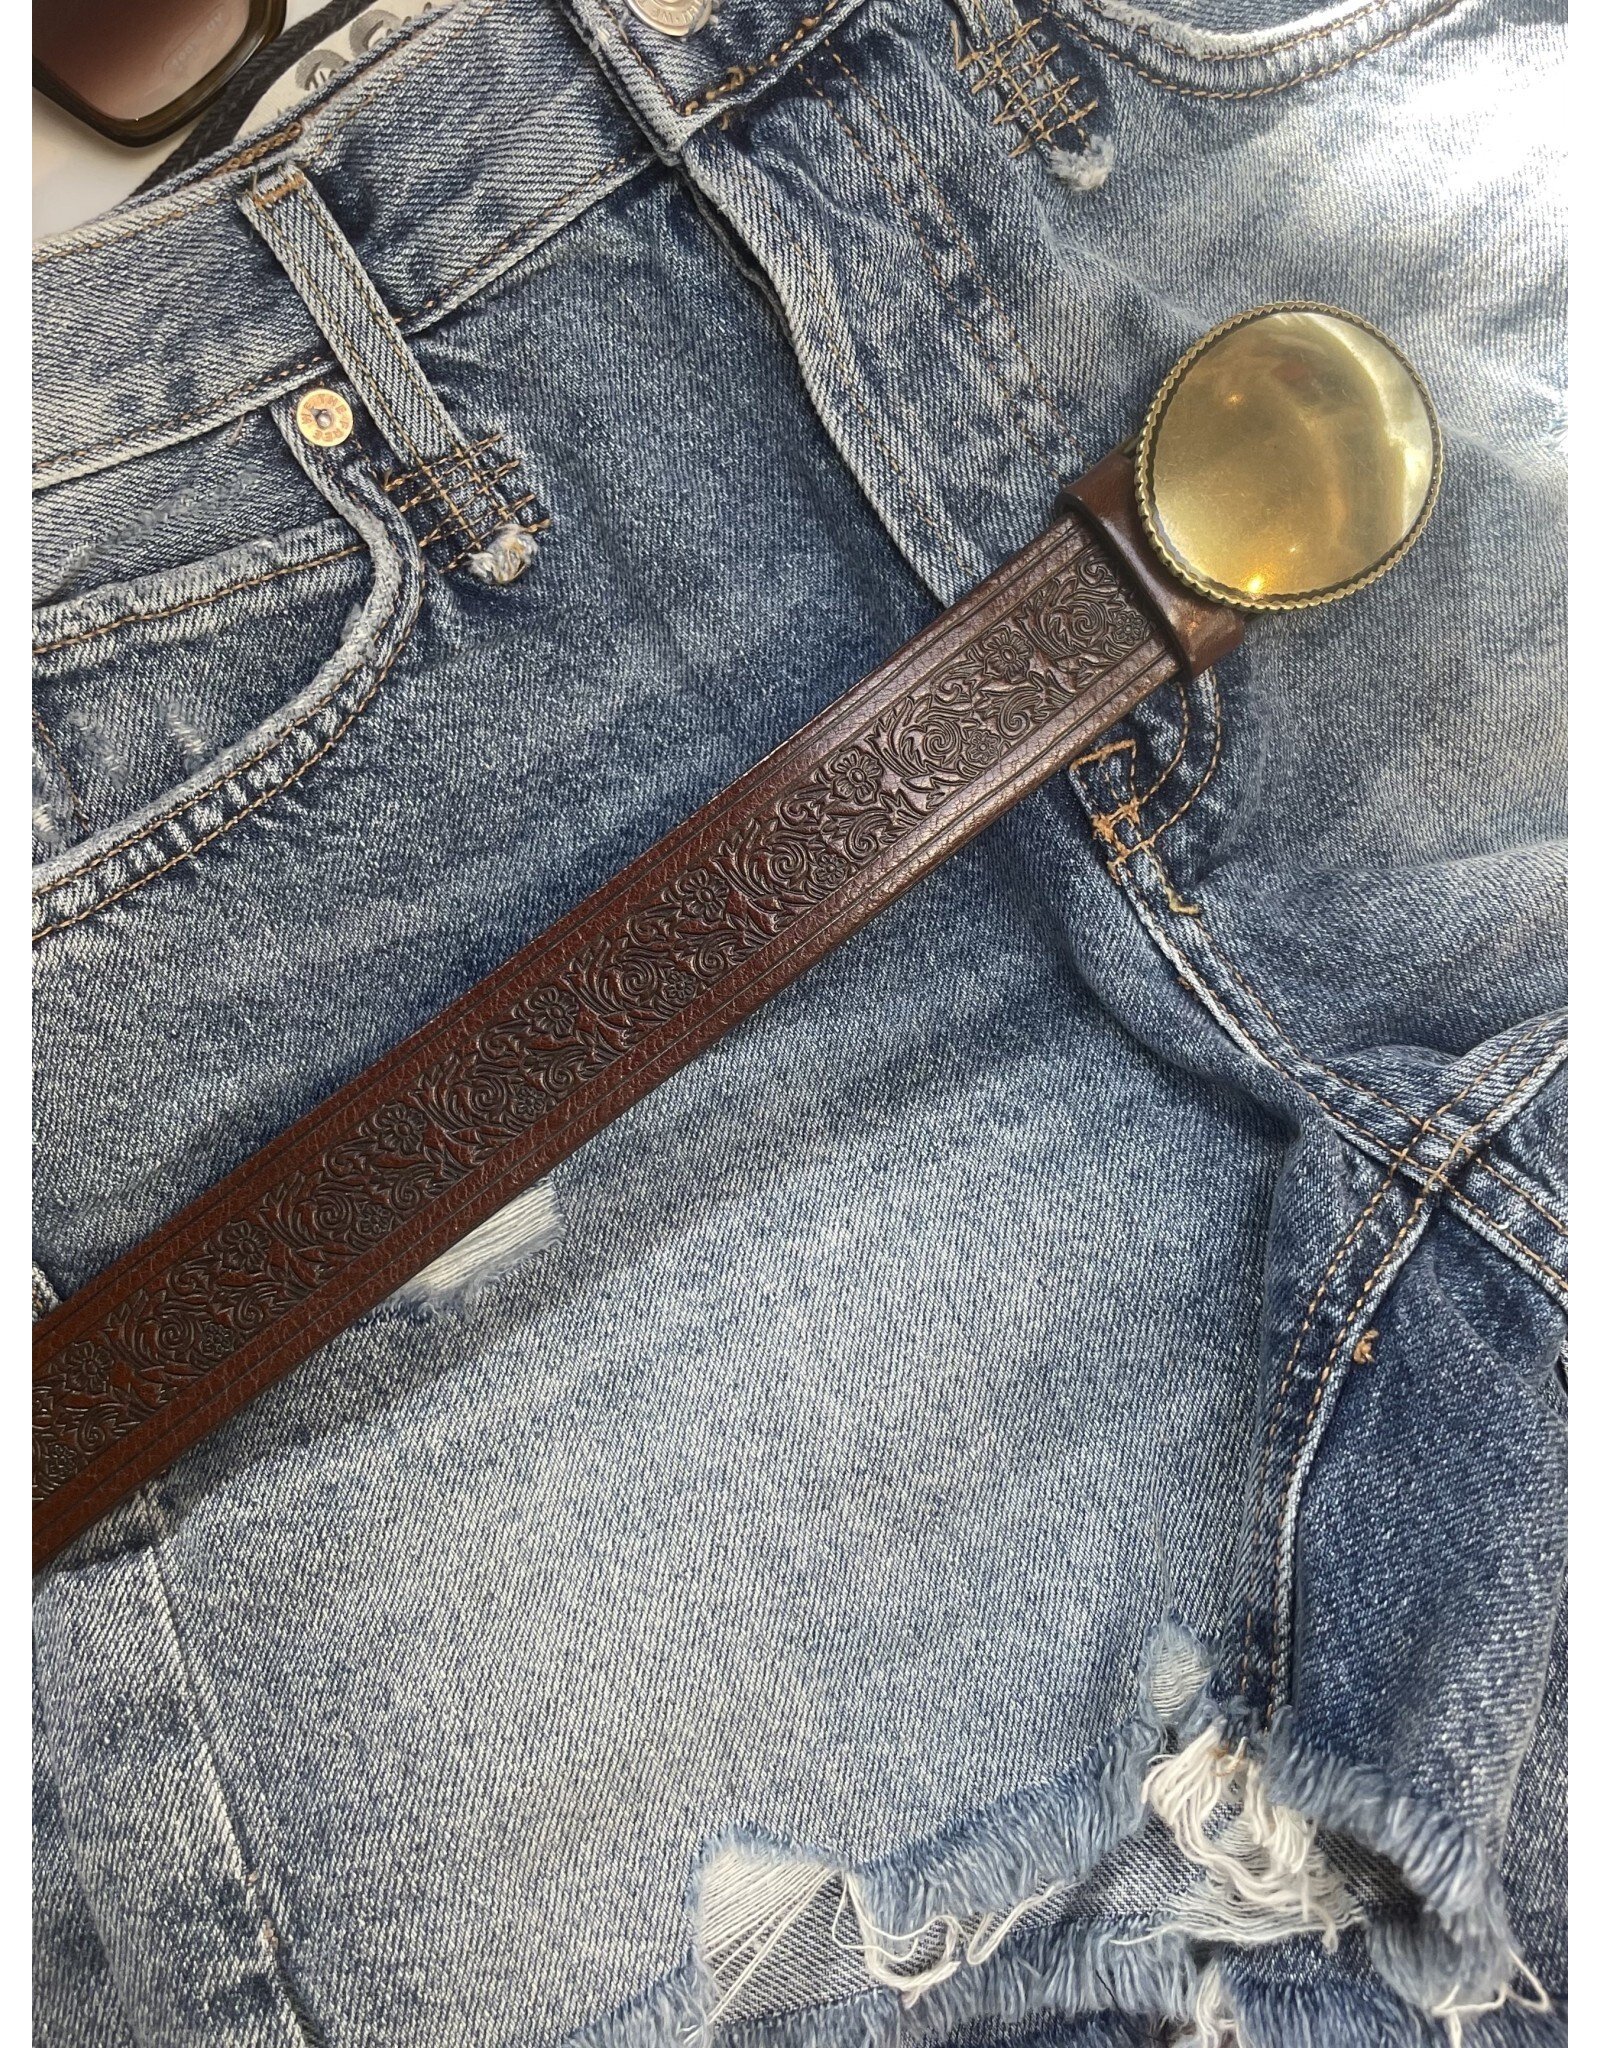 Medike Landes Medike Landes - Casey brown leather belt